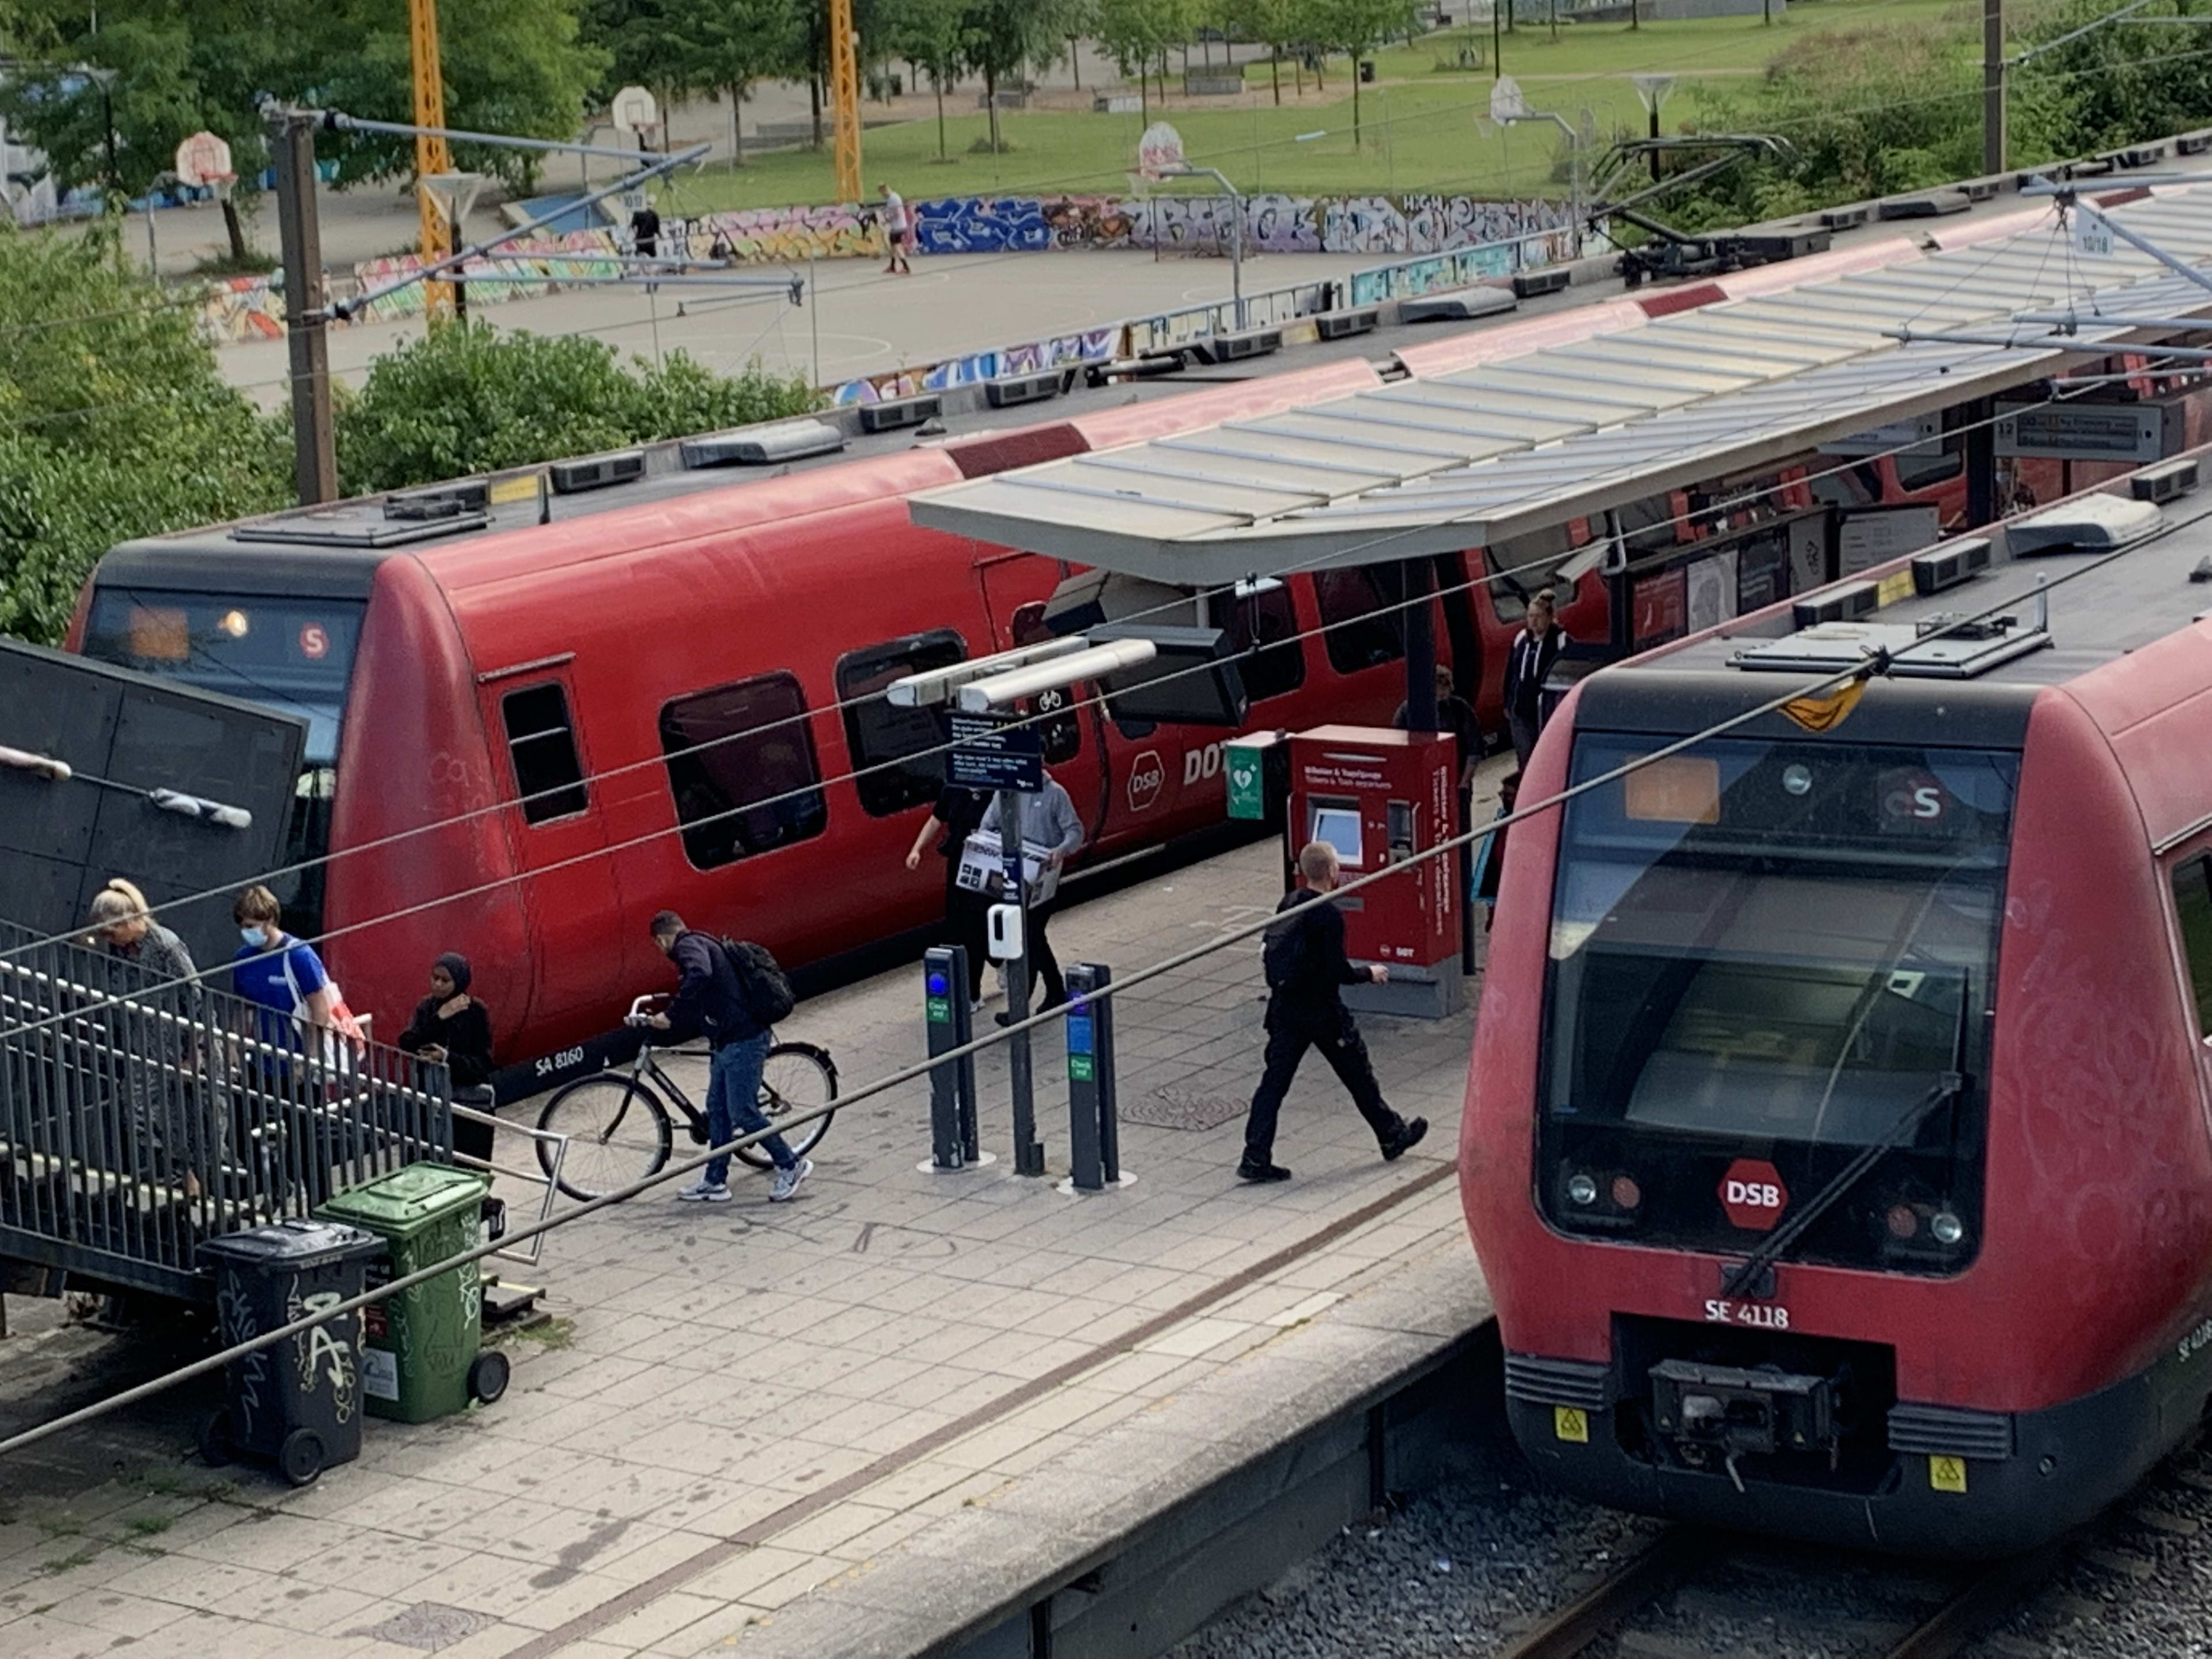 Electric trains are shown in Copenhagen